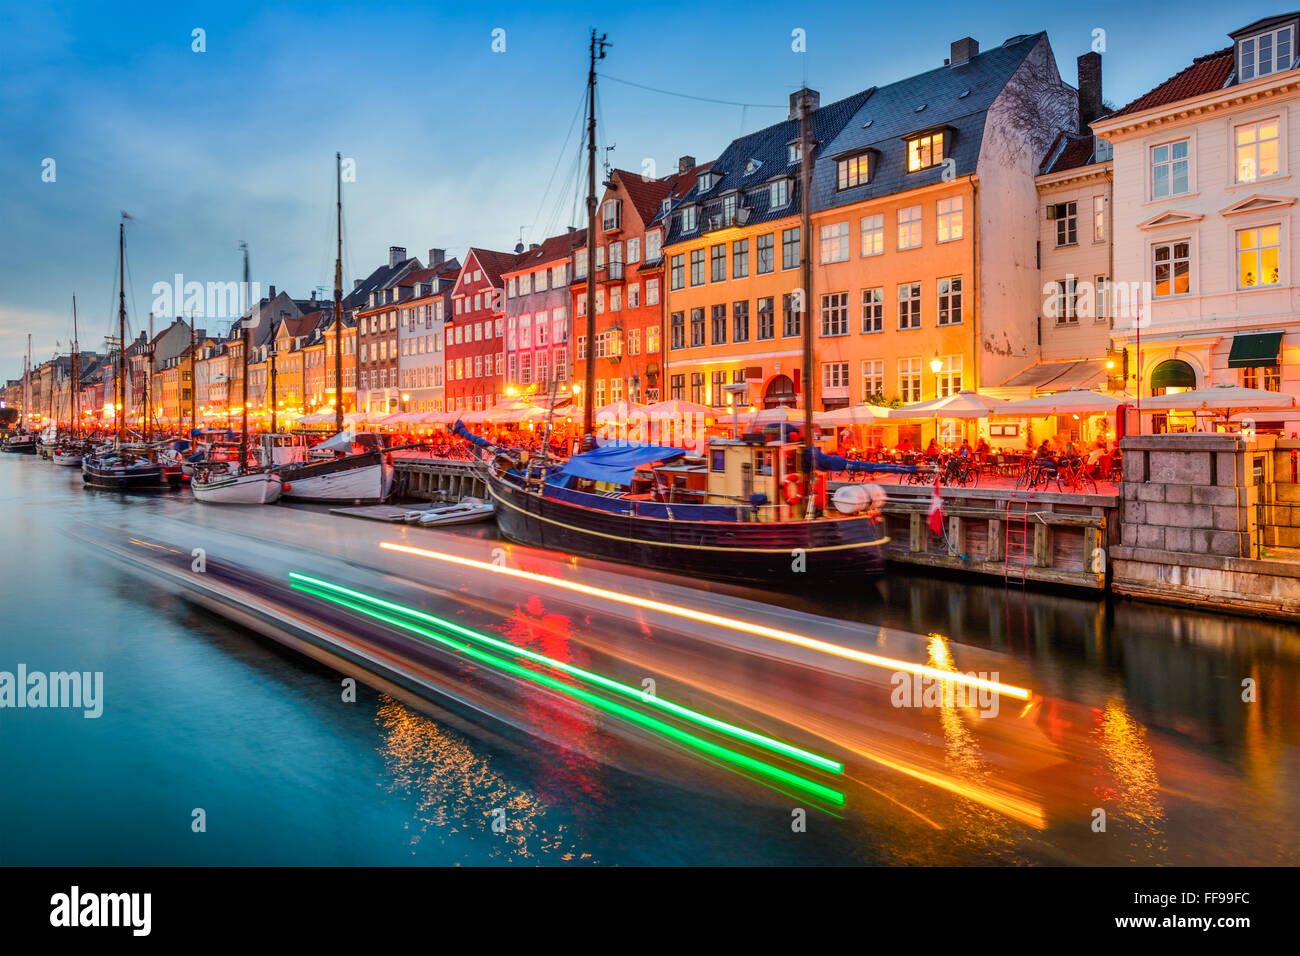 Kopenhagen, Dänemark am Nyhavn-kanal. Stockfoto